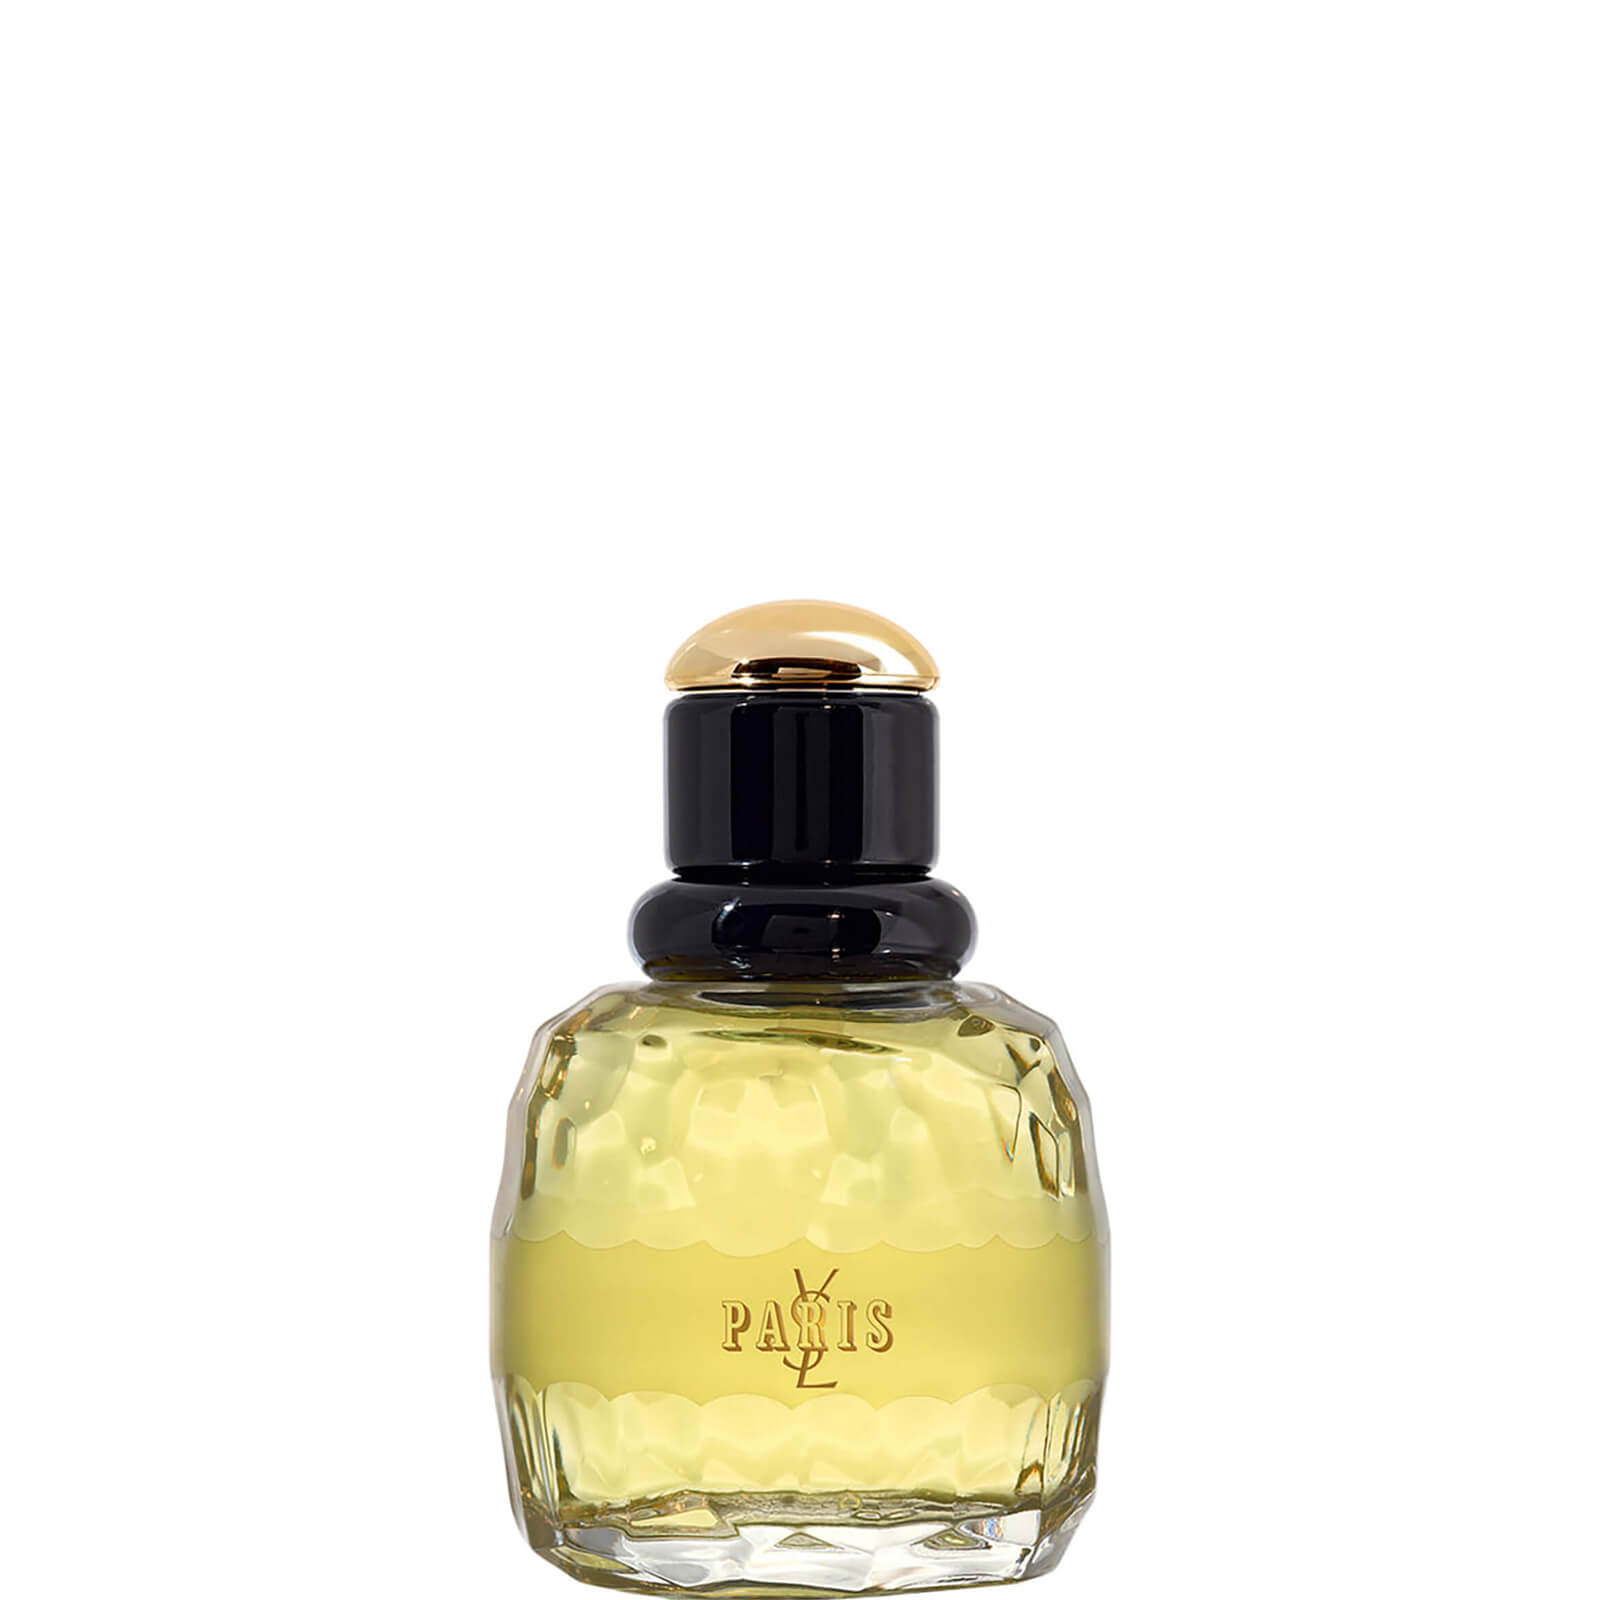 Yves Saint Laurent Paris Eau de Parfum 50ml